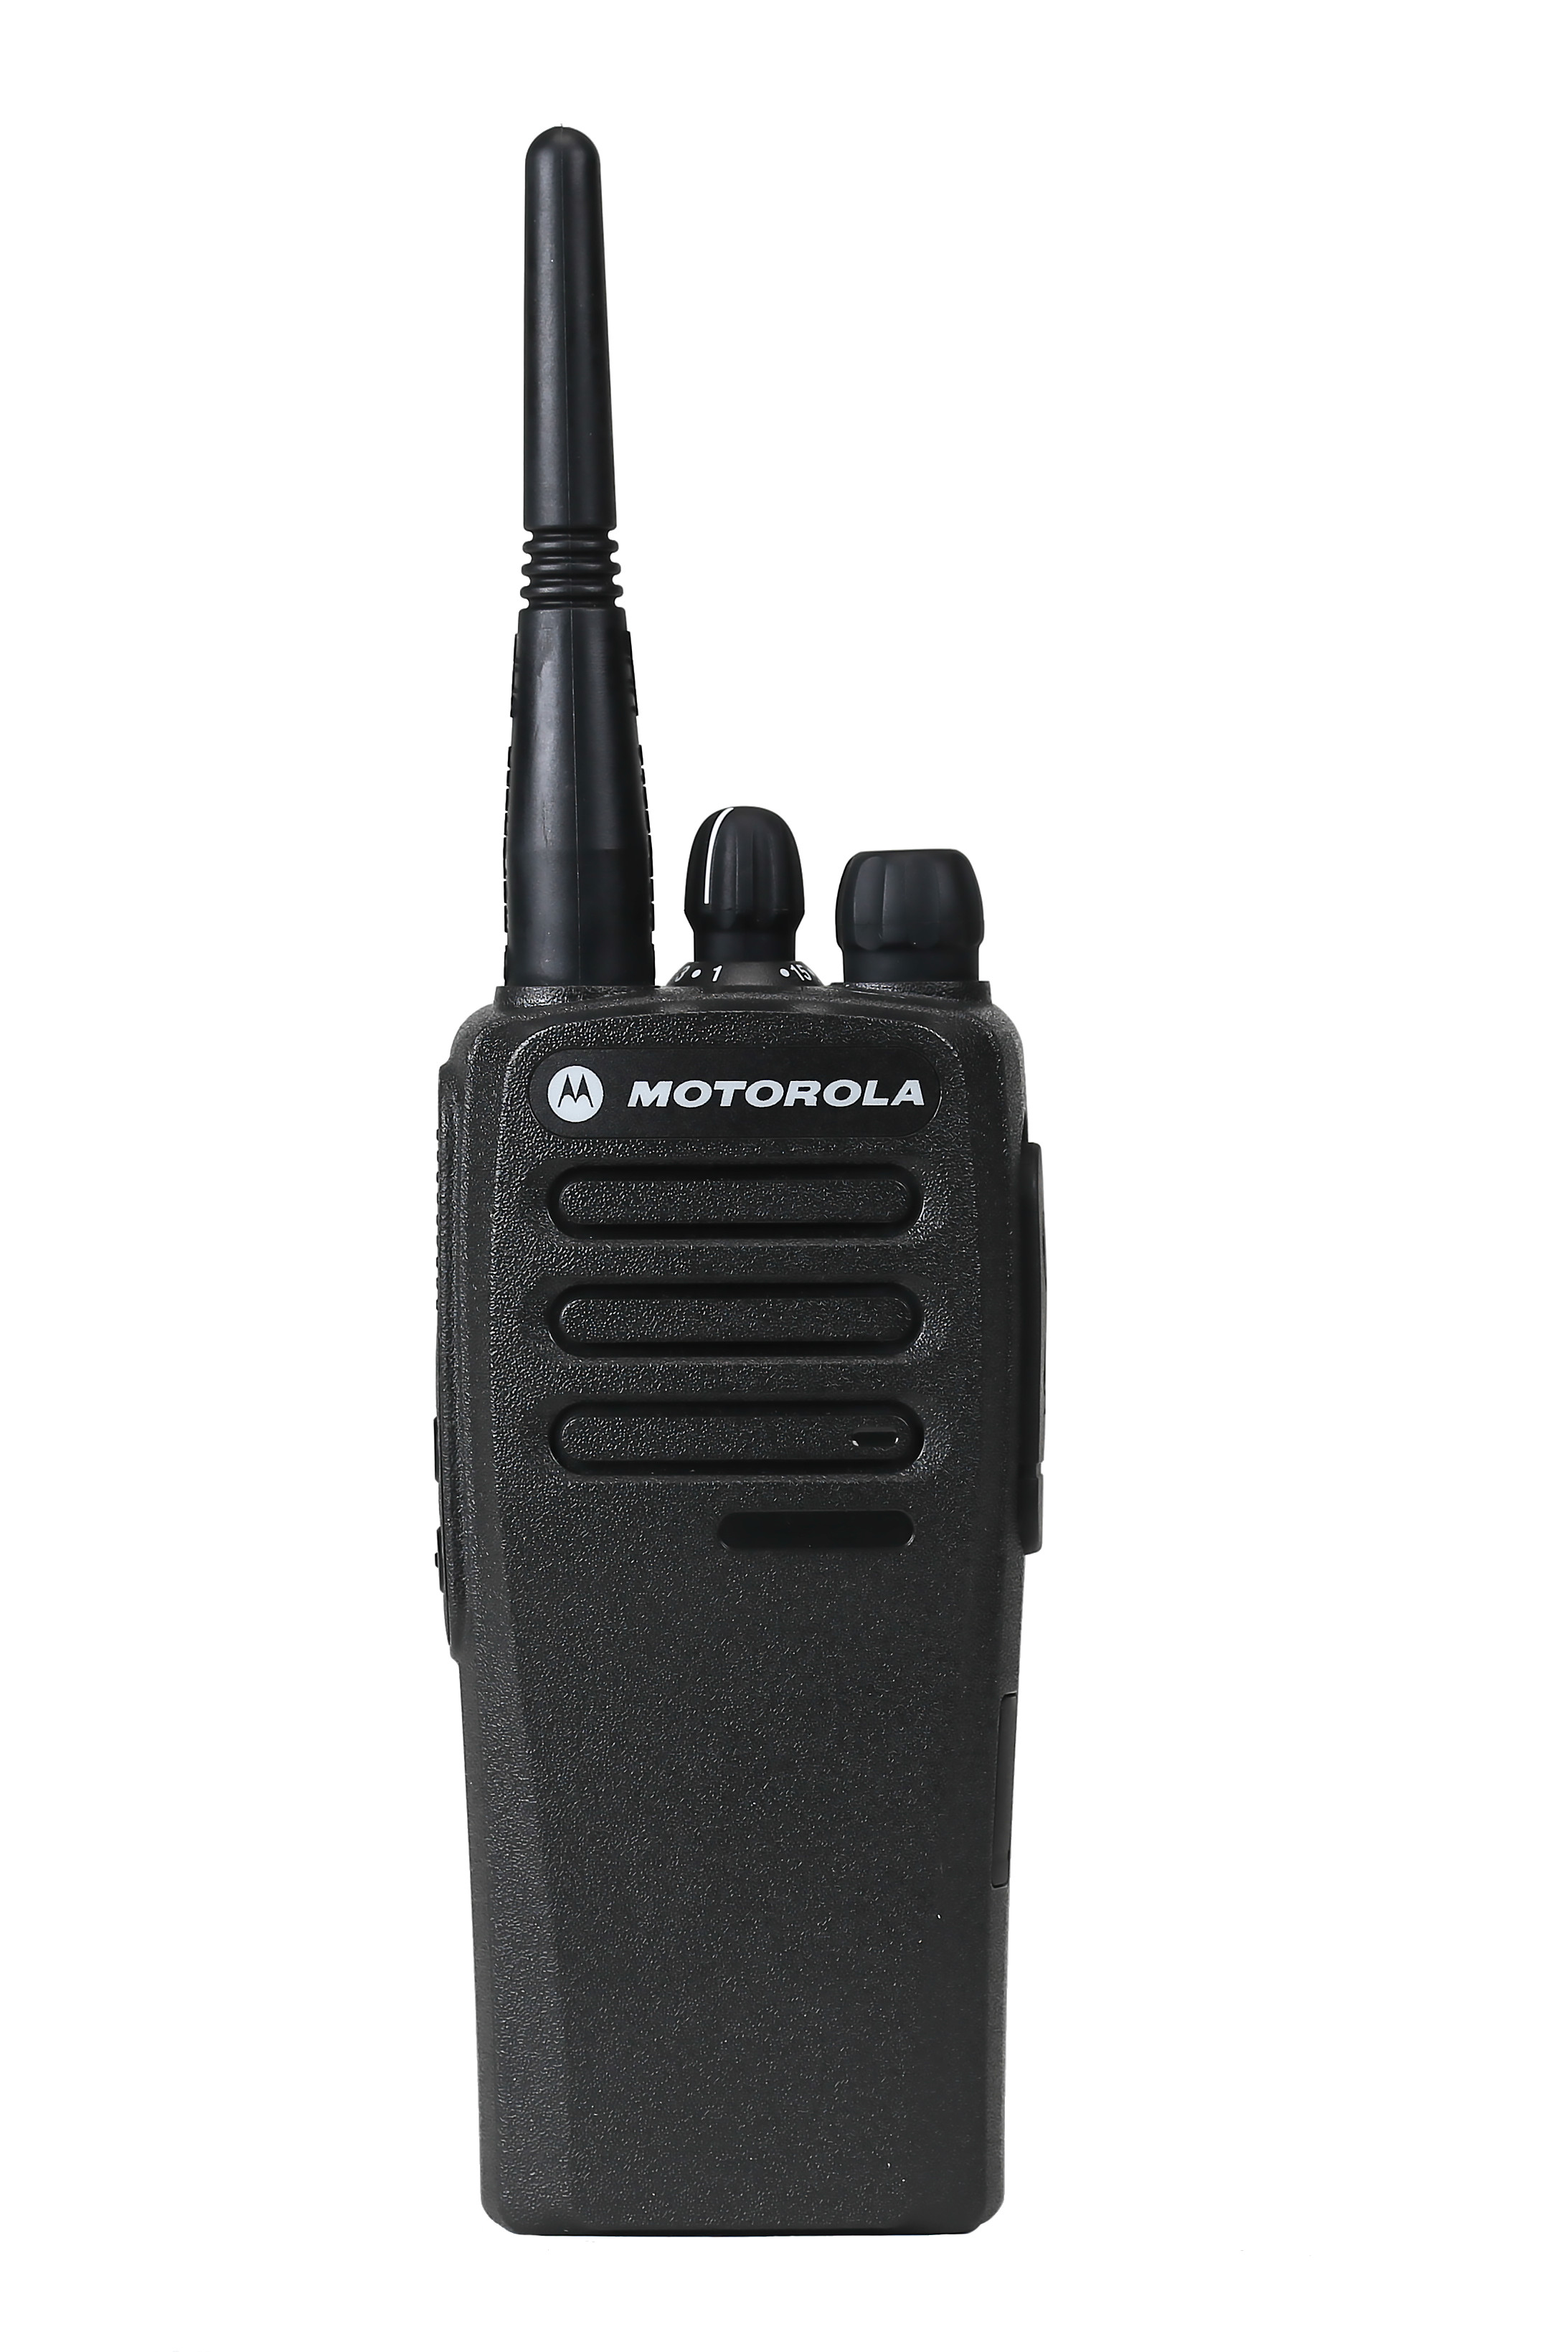 SET - Radiostanice MOTOTRBO DP1400, analogová+VHF anténa+Li-Ion baterie 1600 mAh+nabíječka